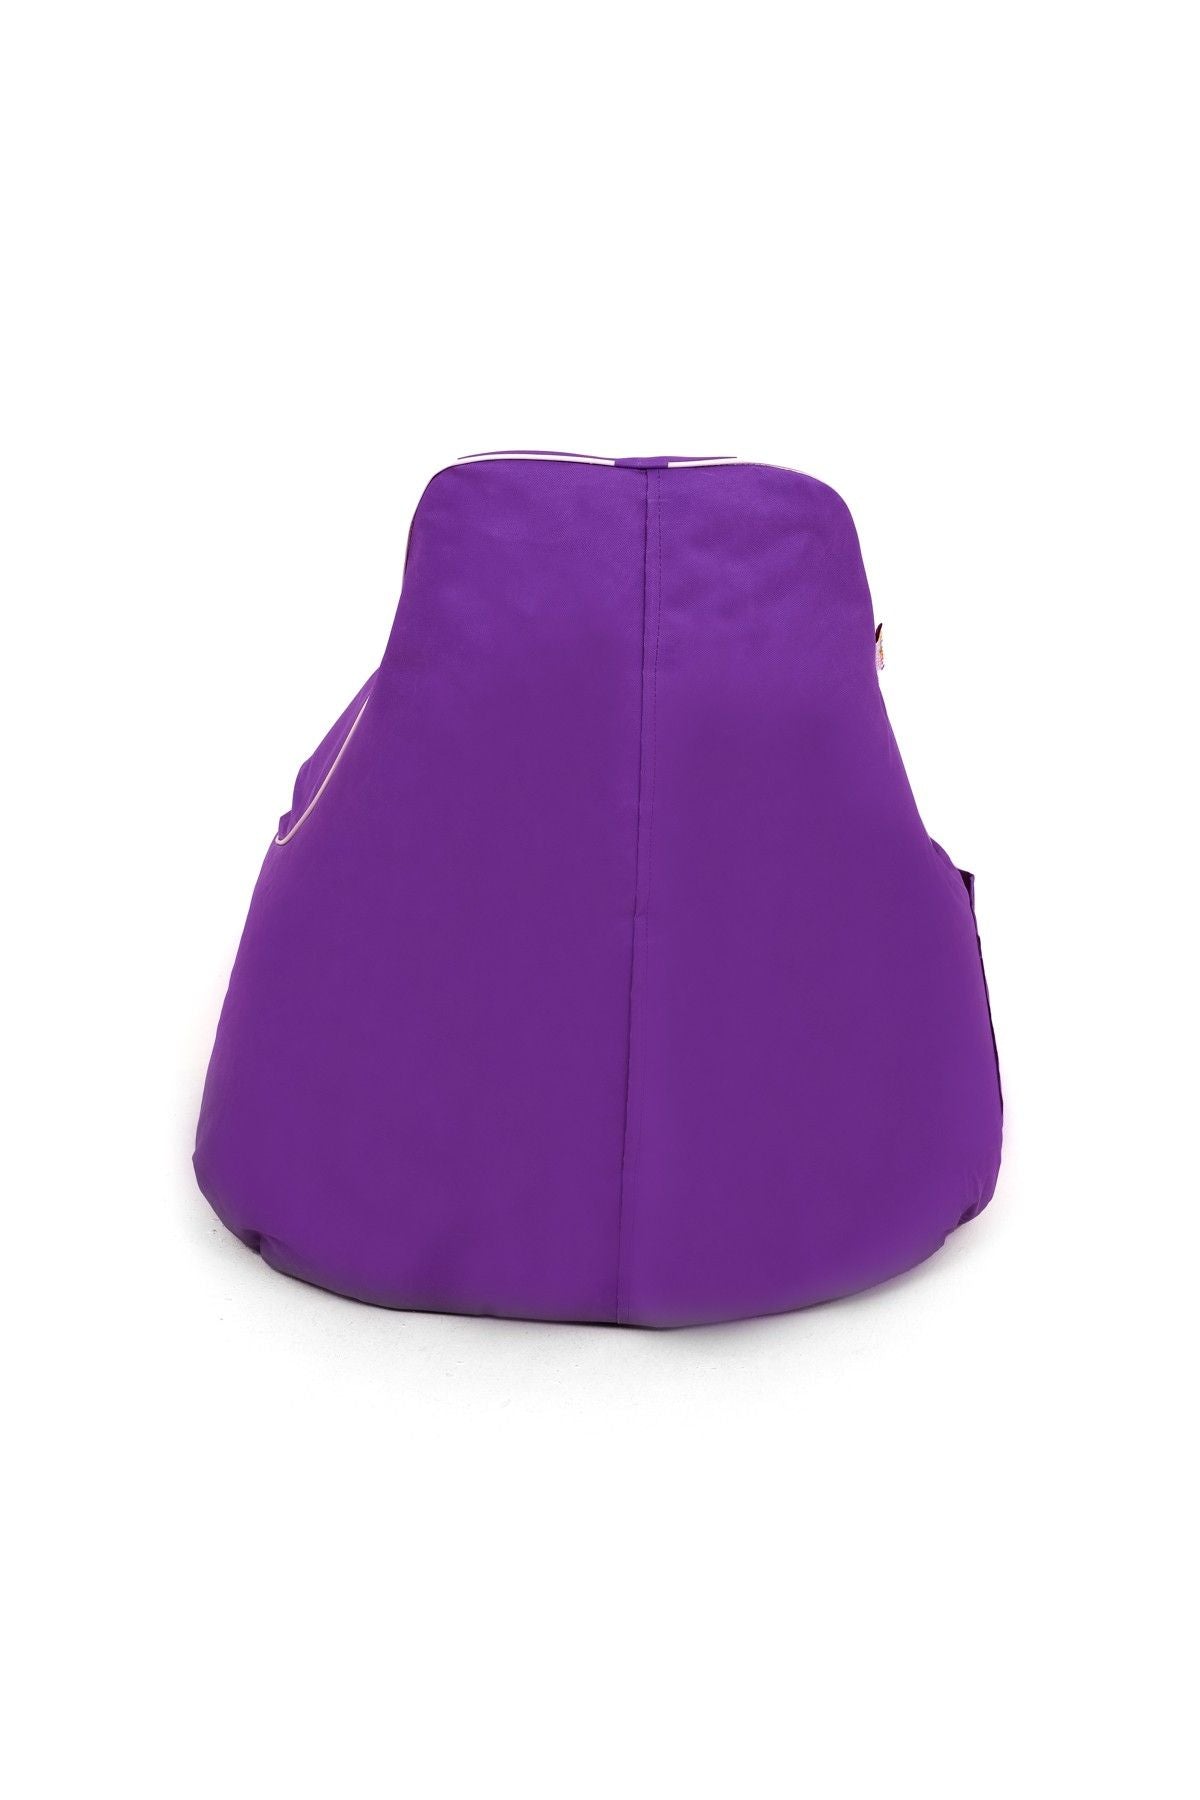 Golf - Purple - Bean Bag